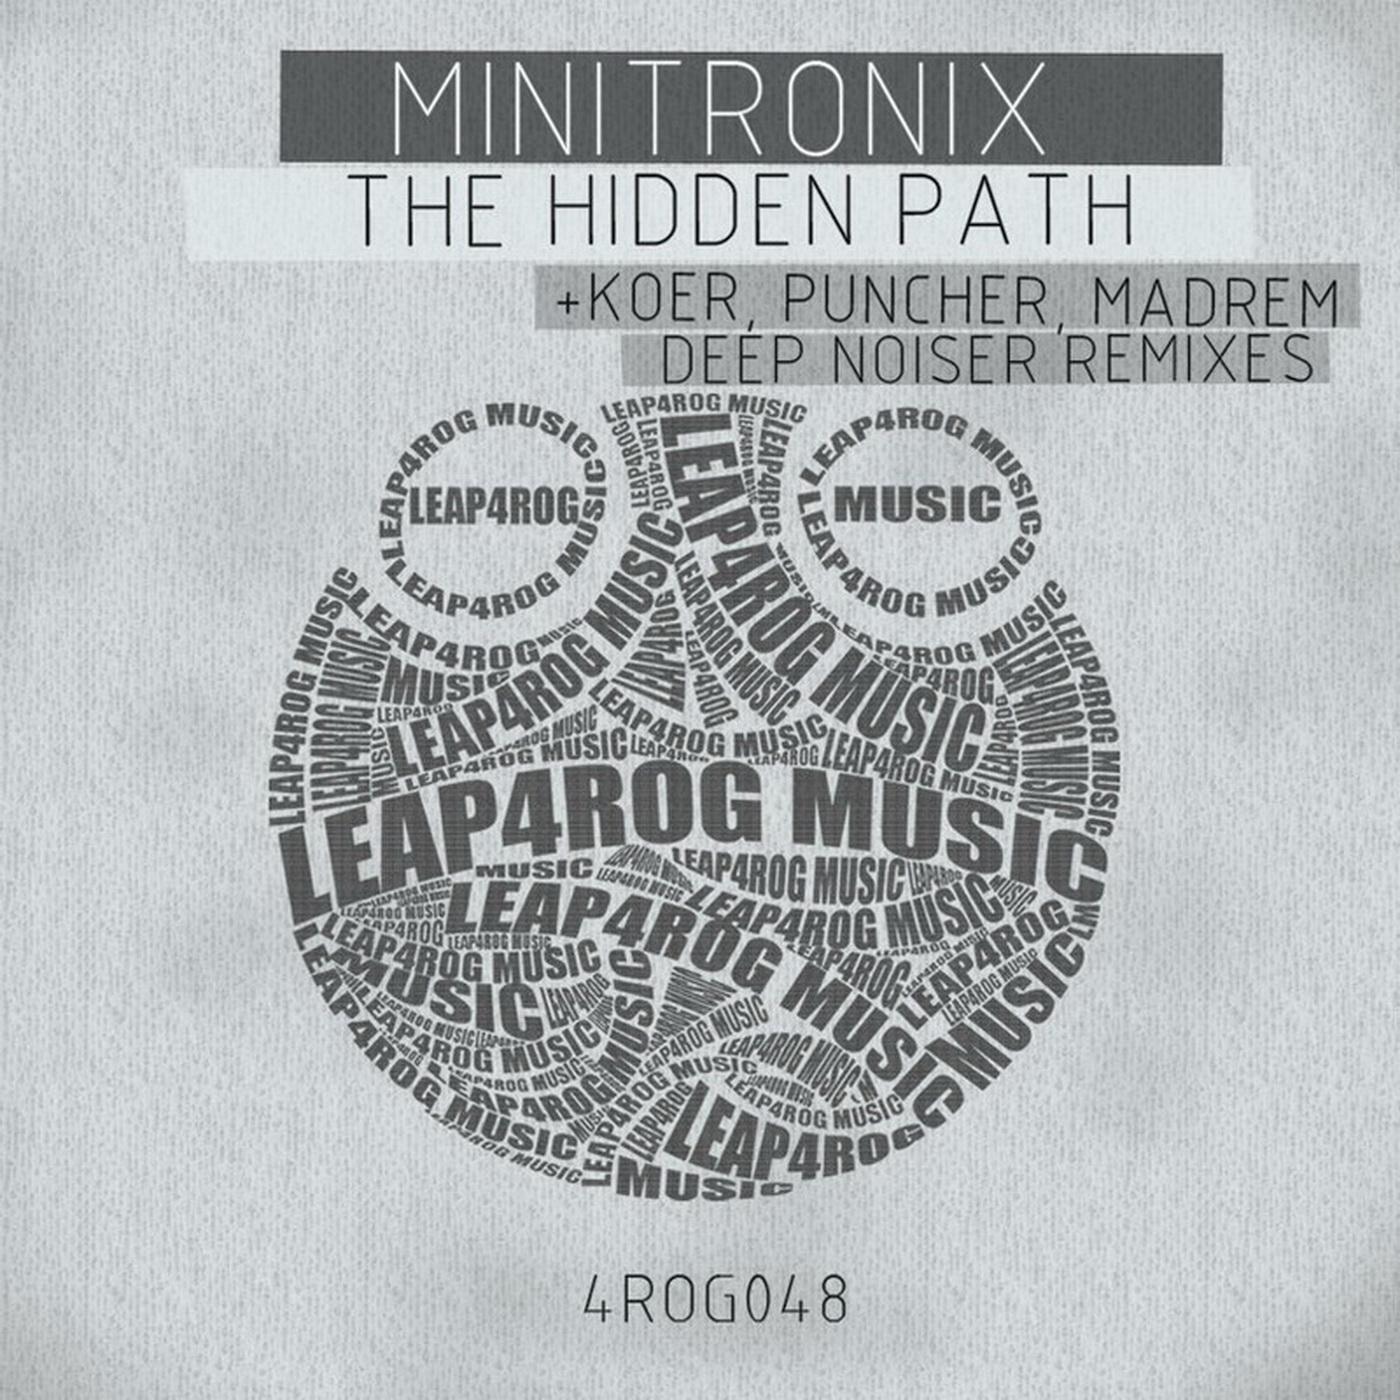 Minitronix - The Hidden Path (Deep Noiser Remix)